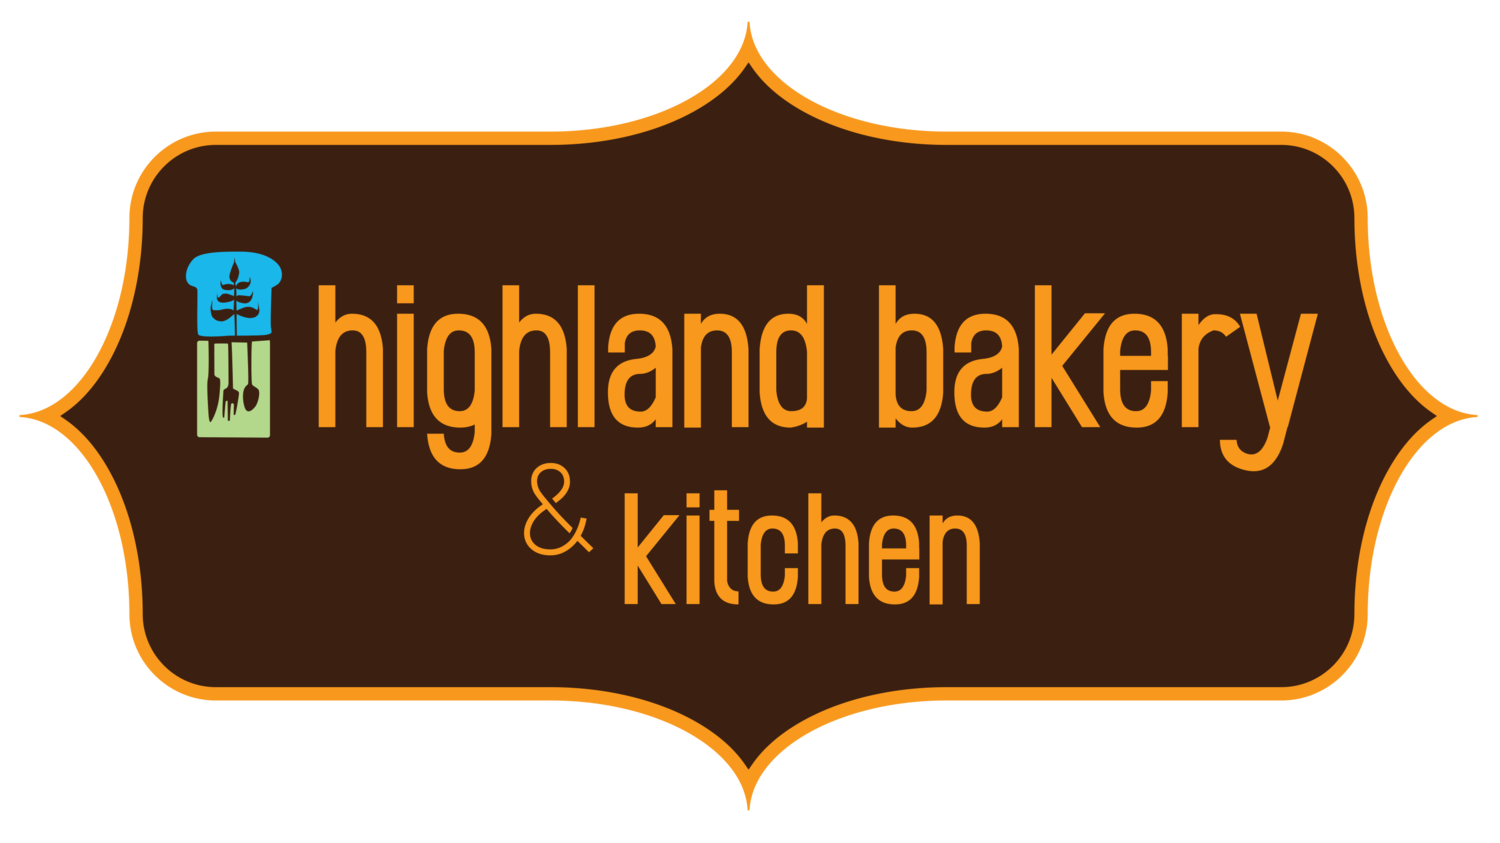 Highland bakery